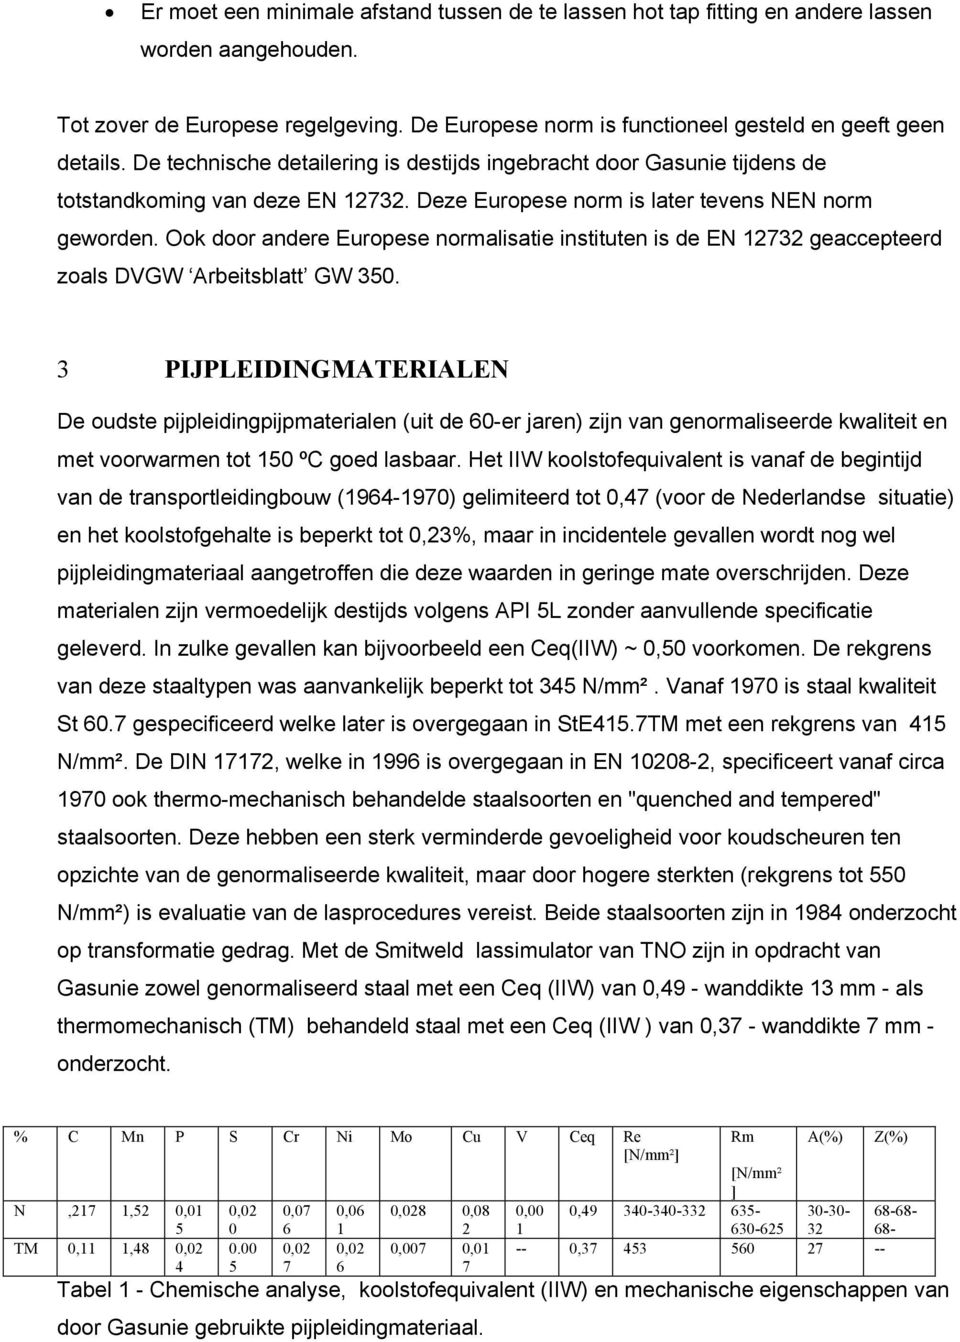 Ook door andere Europese normalisatie instituten is de EN 12732 geaccepteerd zoals DVGW Arbeitsblatt GW 350.